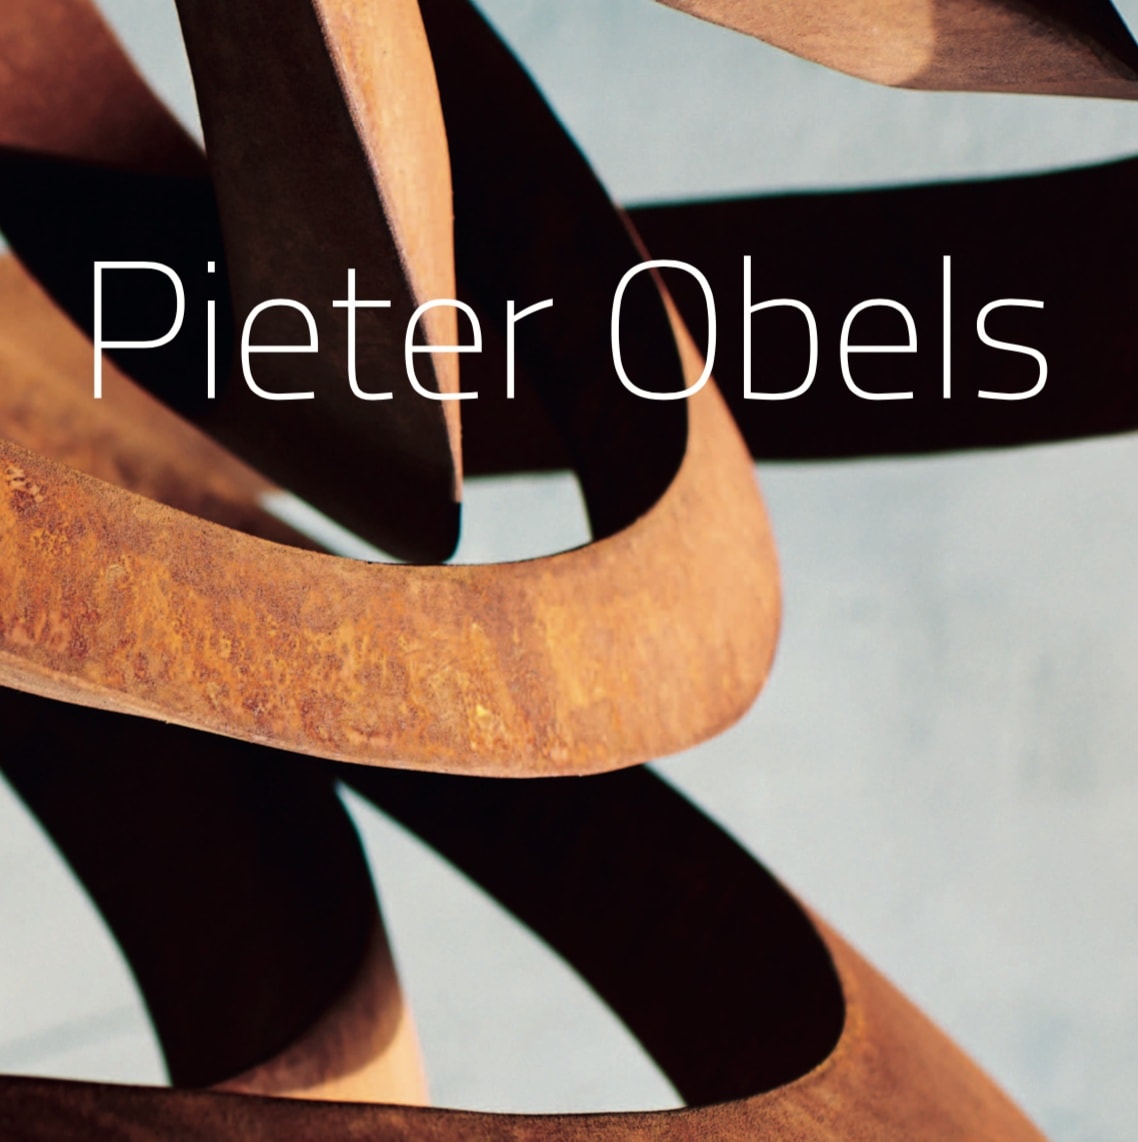 Pieter Obels